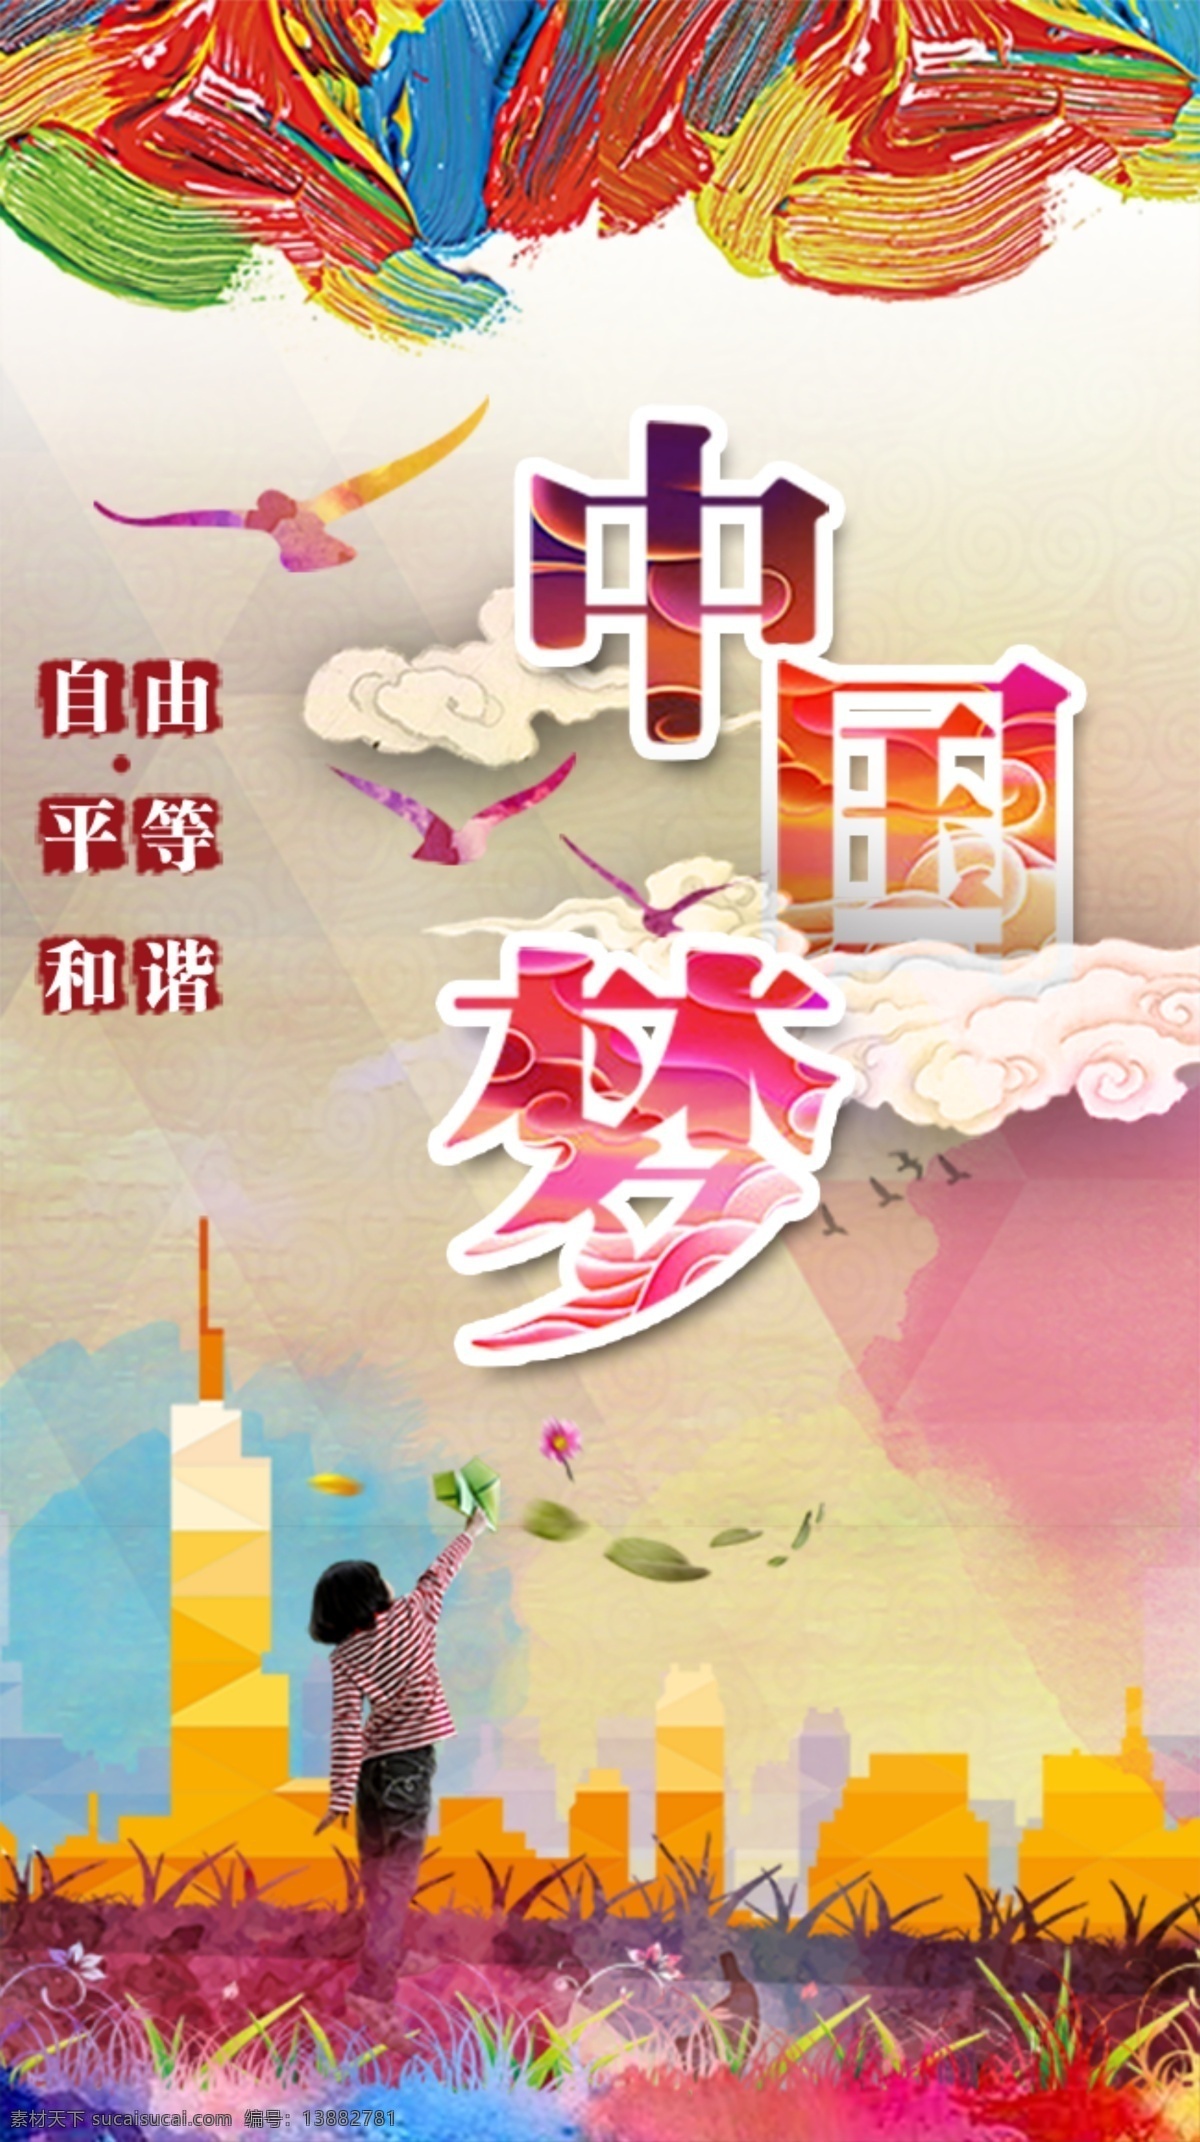 中国梦文化 绚丽中国梦 中国梦展板 我的中国梦 中国梦海报 中国梦宣传栏 中国梦我的梦